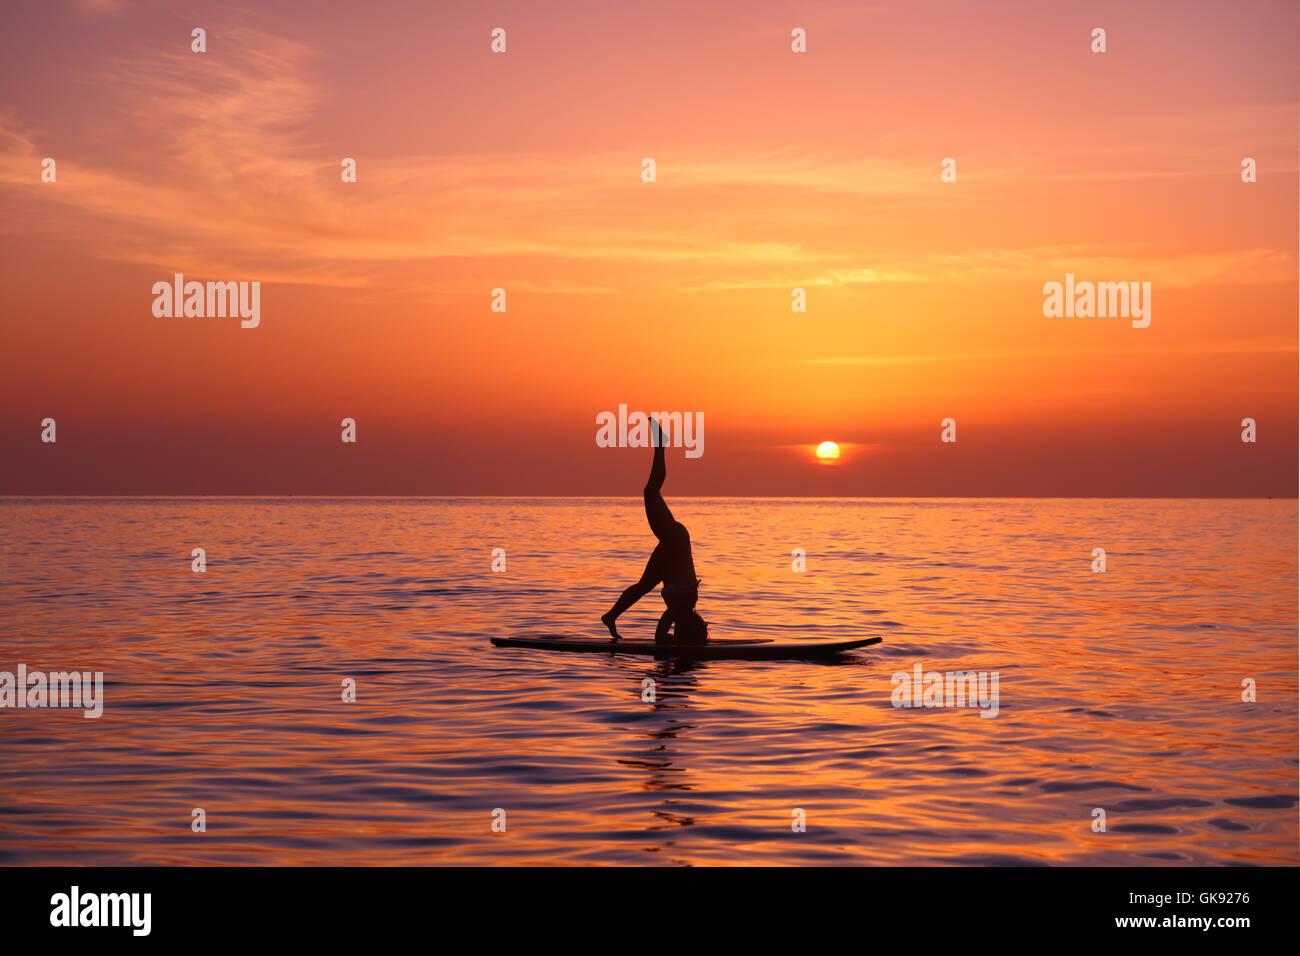 Silhouette d'un professeur de yoga balancing on paddle board plus beau coucher du soleil orange background, debout sur la tête Banque D'Images